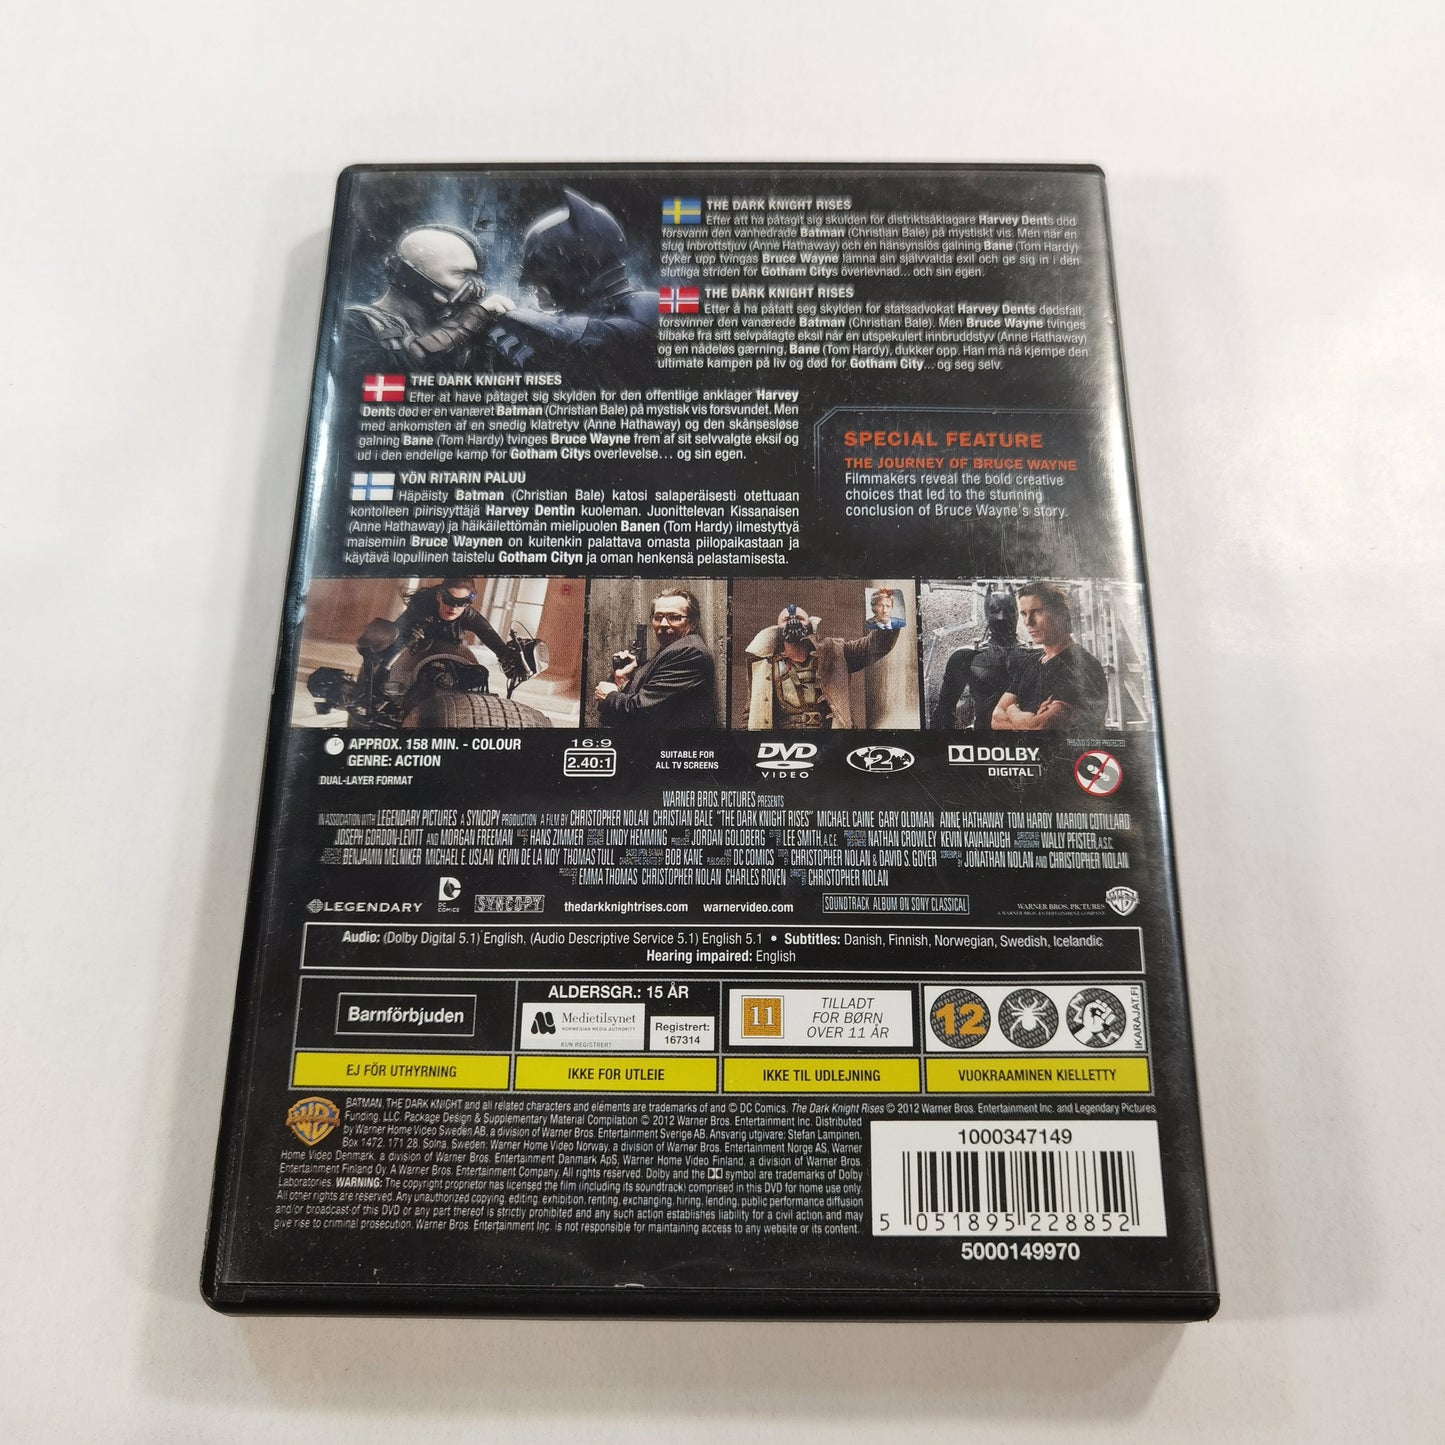 Batman: The Dark Knight Rises (2012) - DVD SE NO DK FI 2012